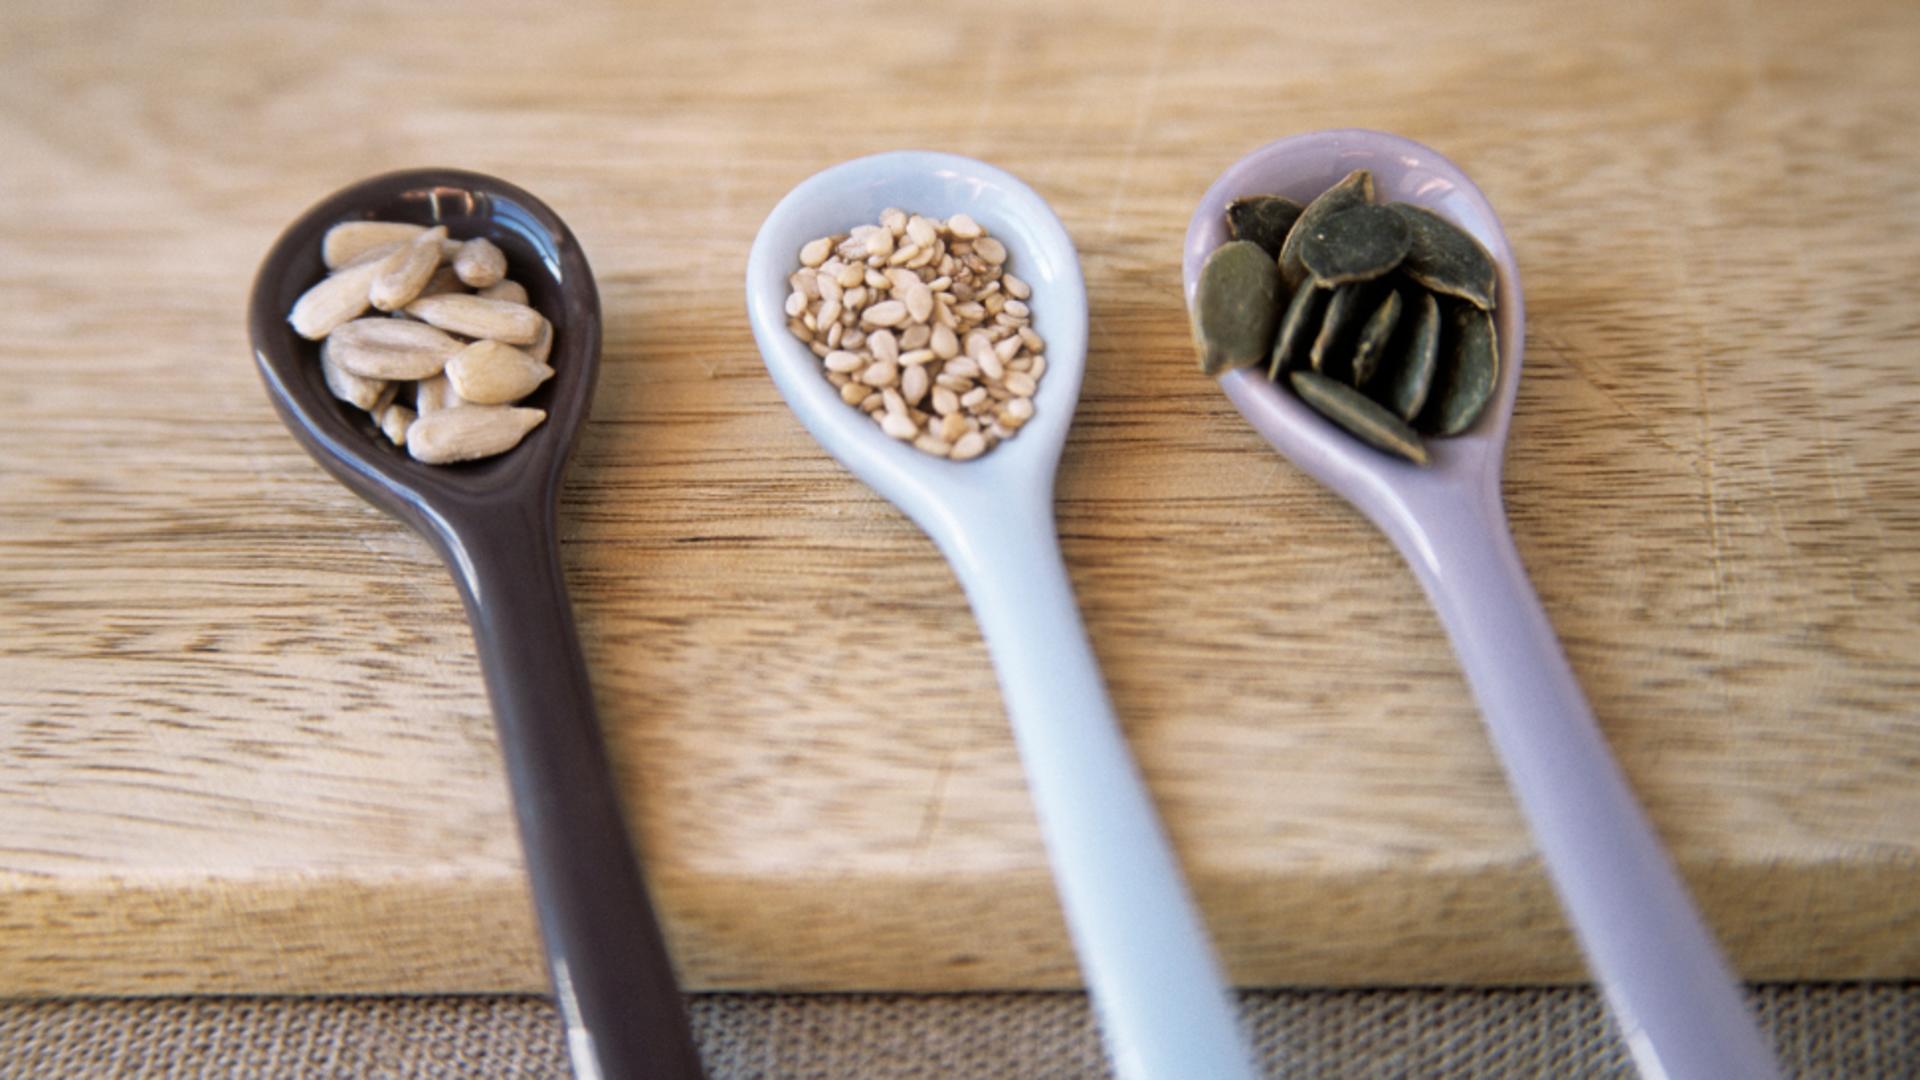 Diete sănătoase. 6 tipuri de nuci și semințe mai puțin cunoscute, dar benefice pentru sănătate